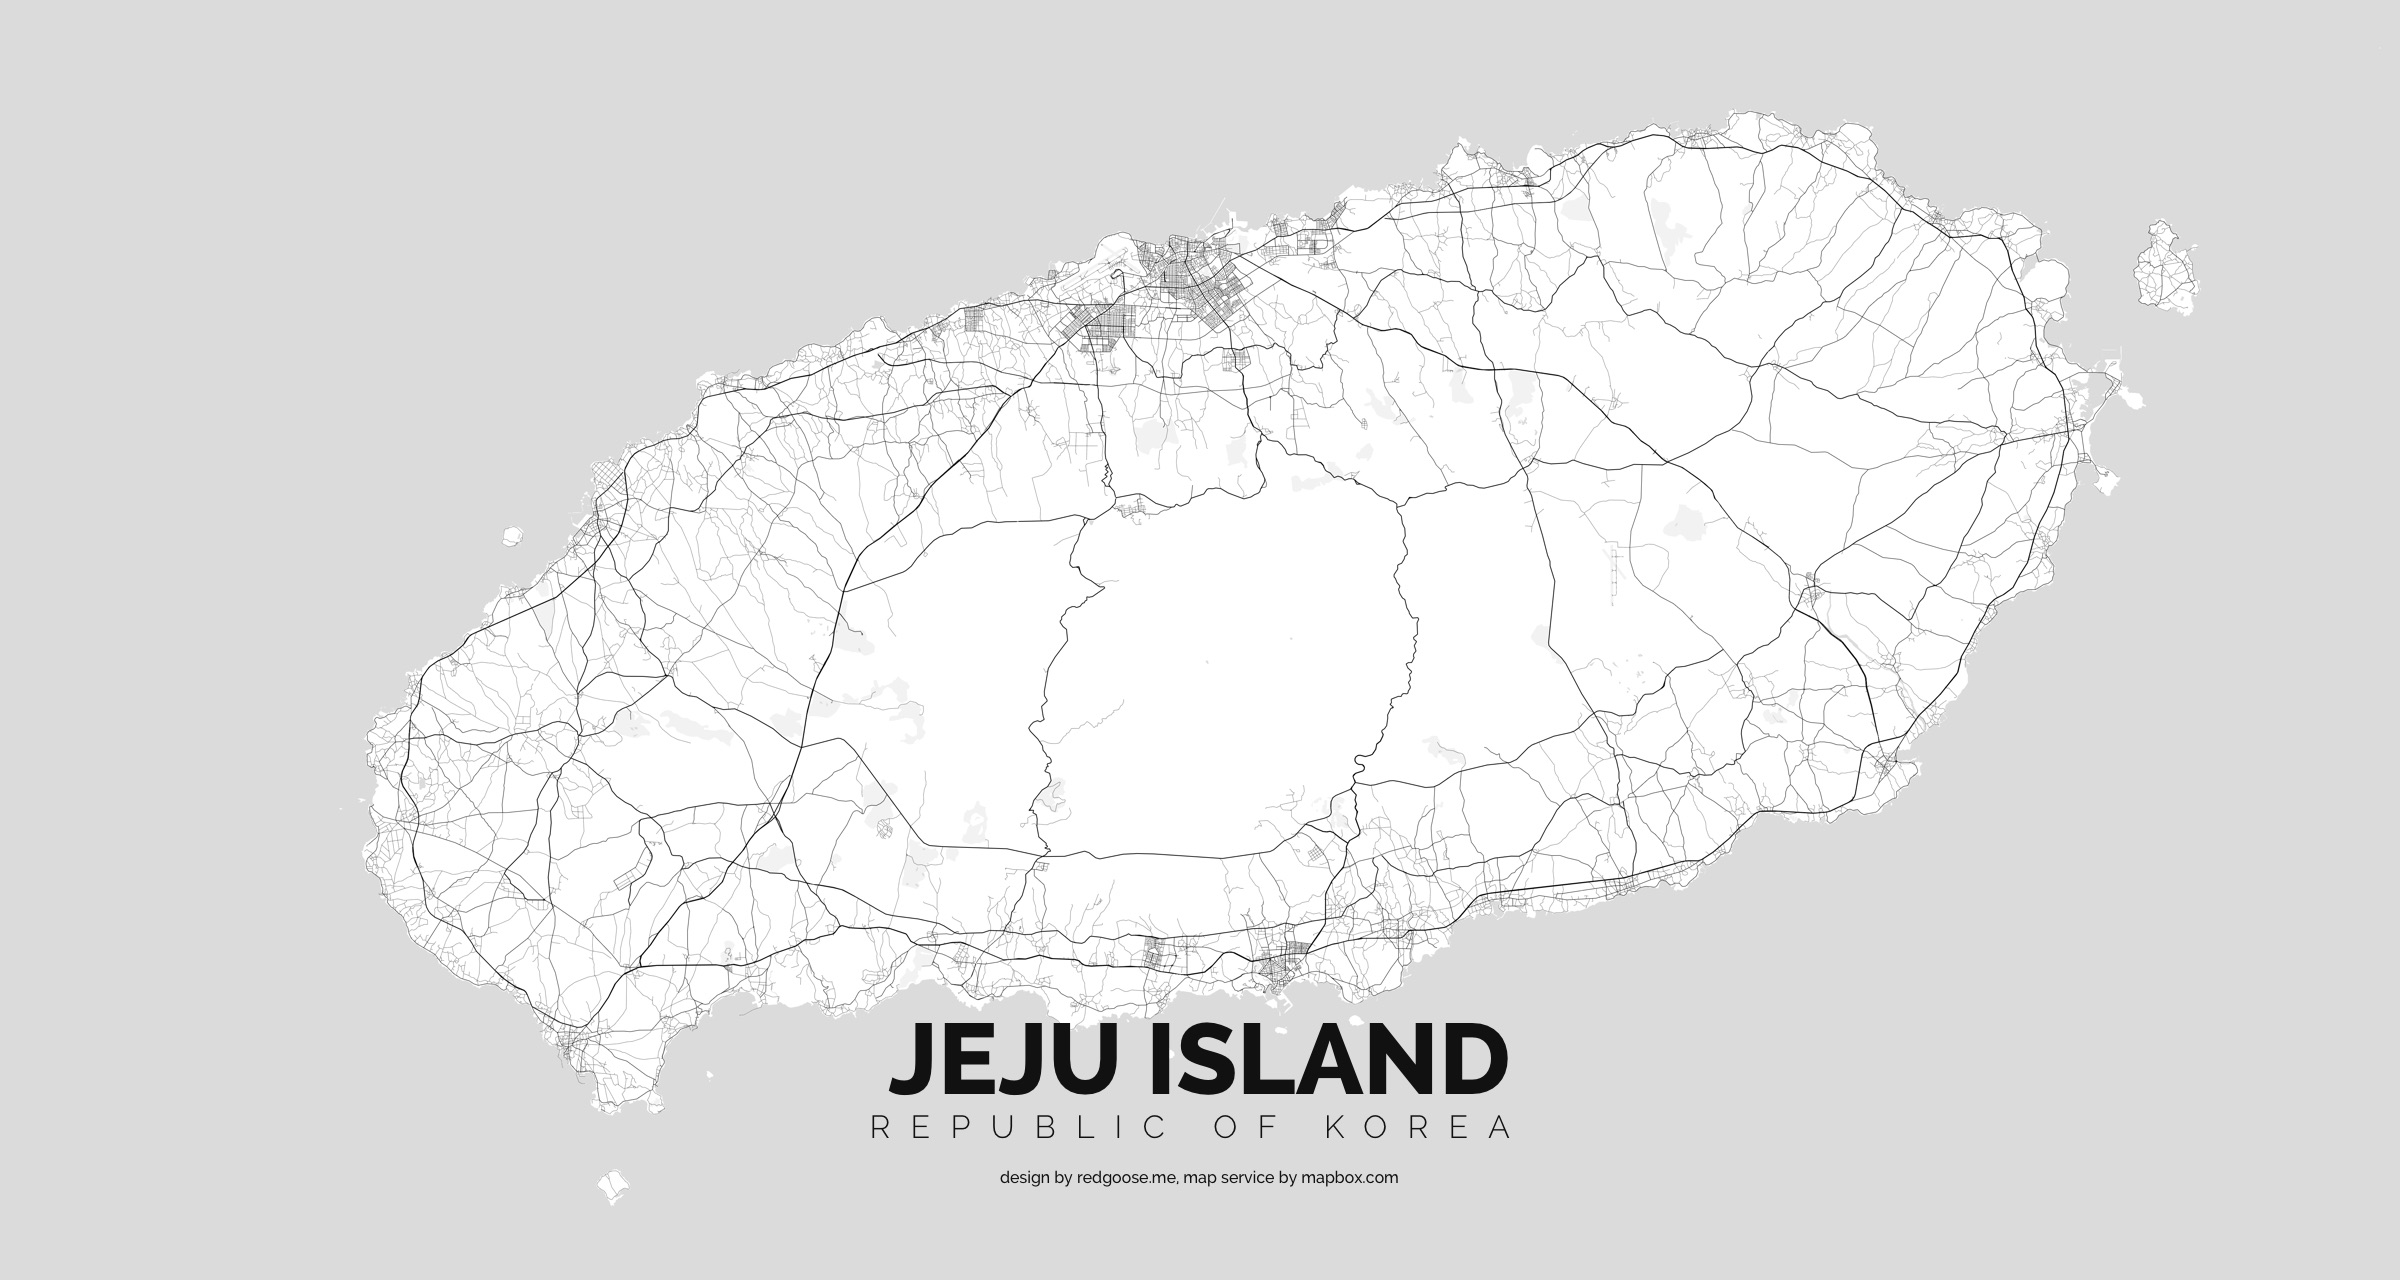 Korea_-_Jeju_island.jpg